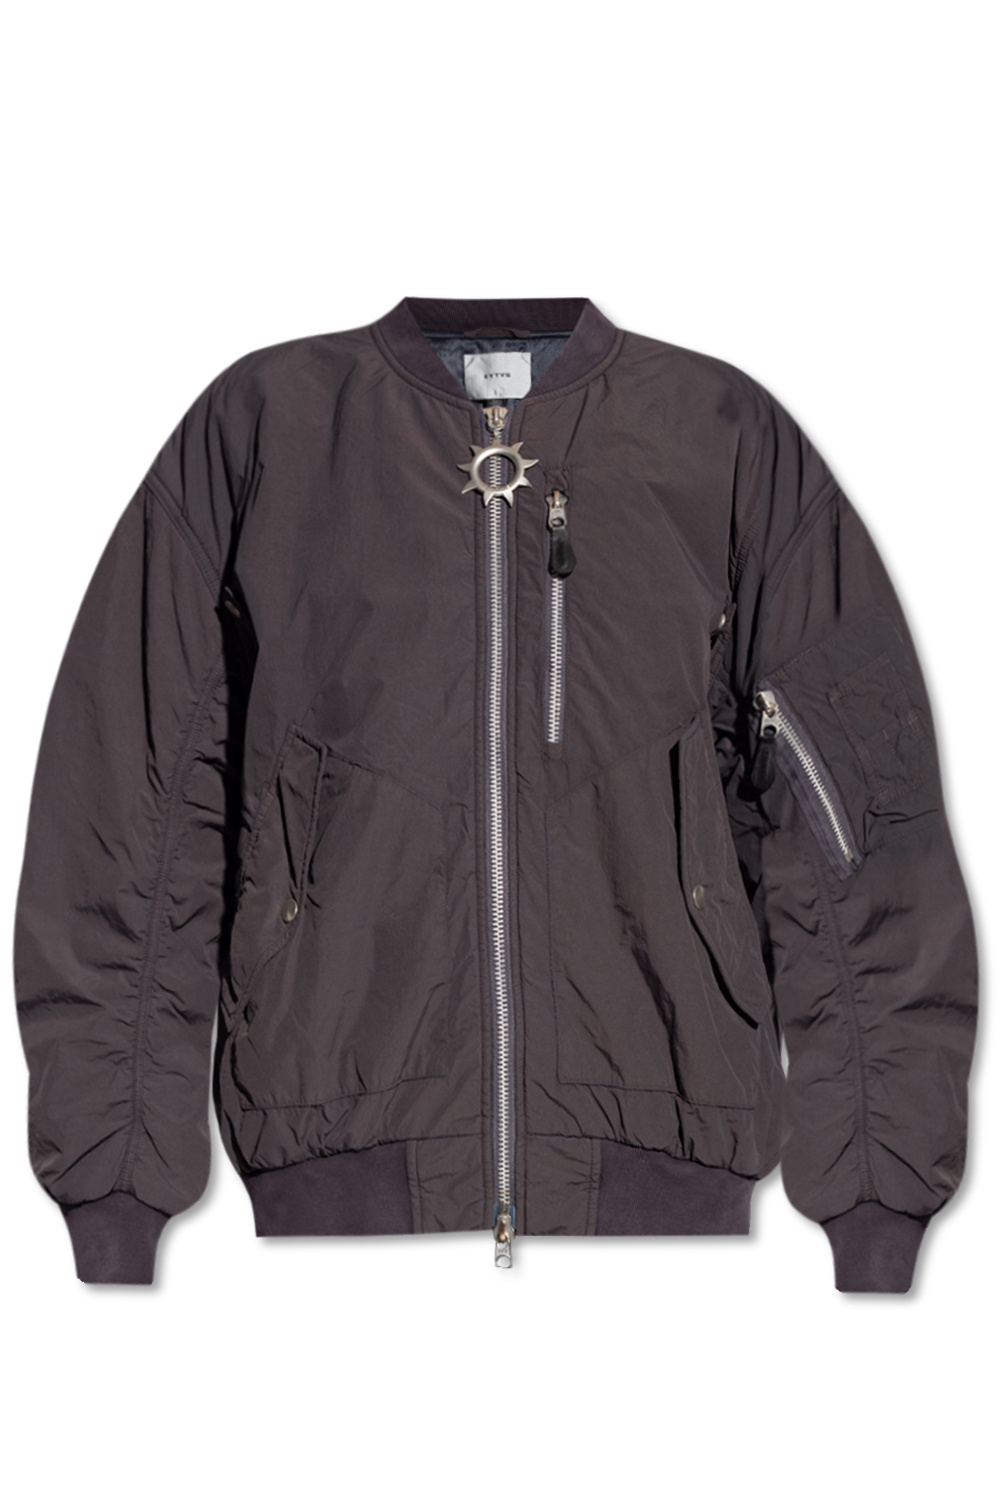 Eytys ‘Delta’ bomber jacket